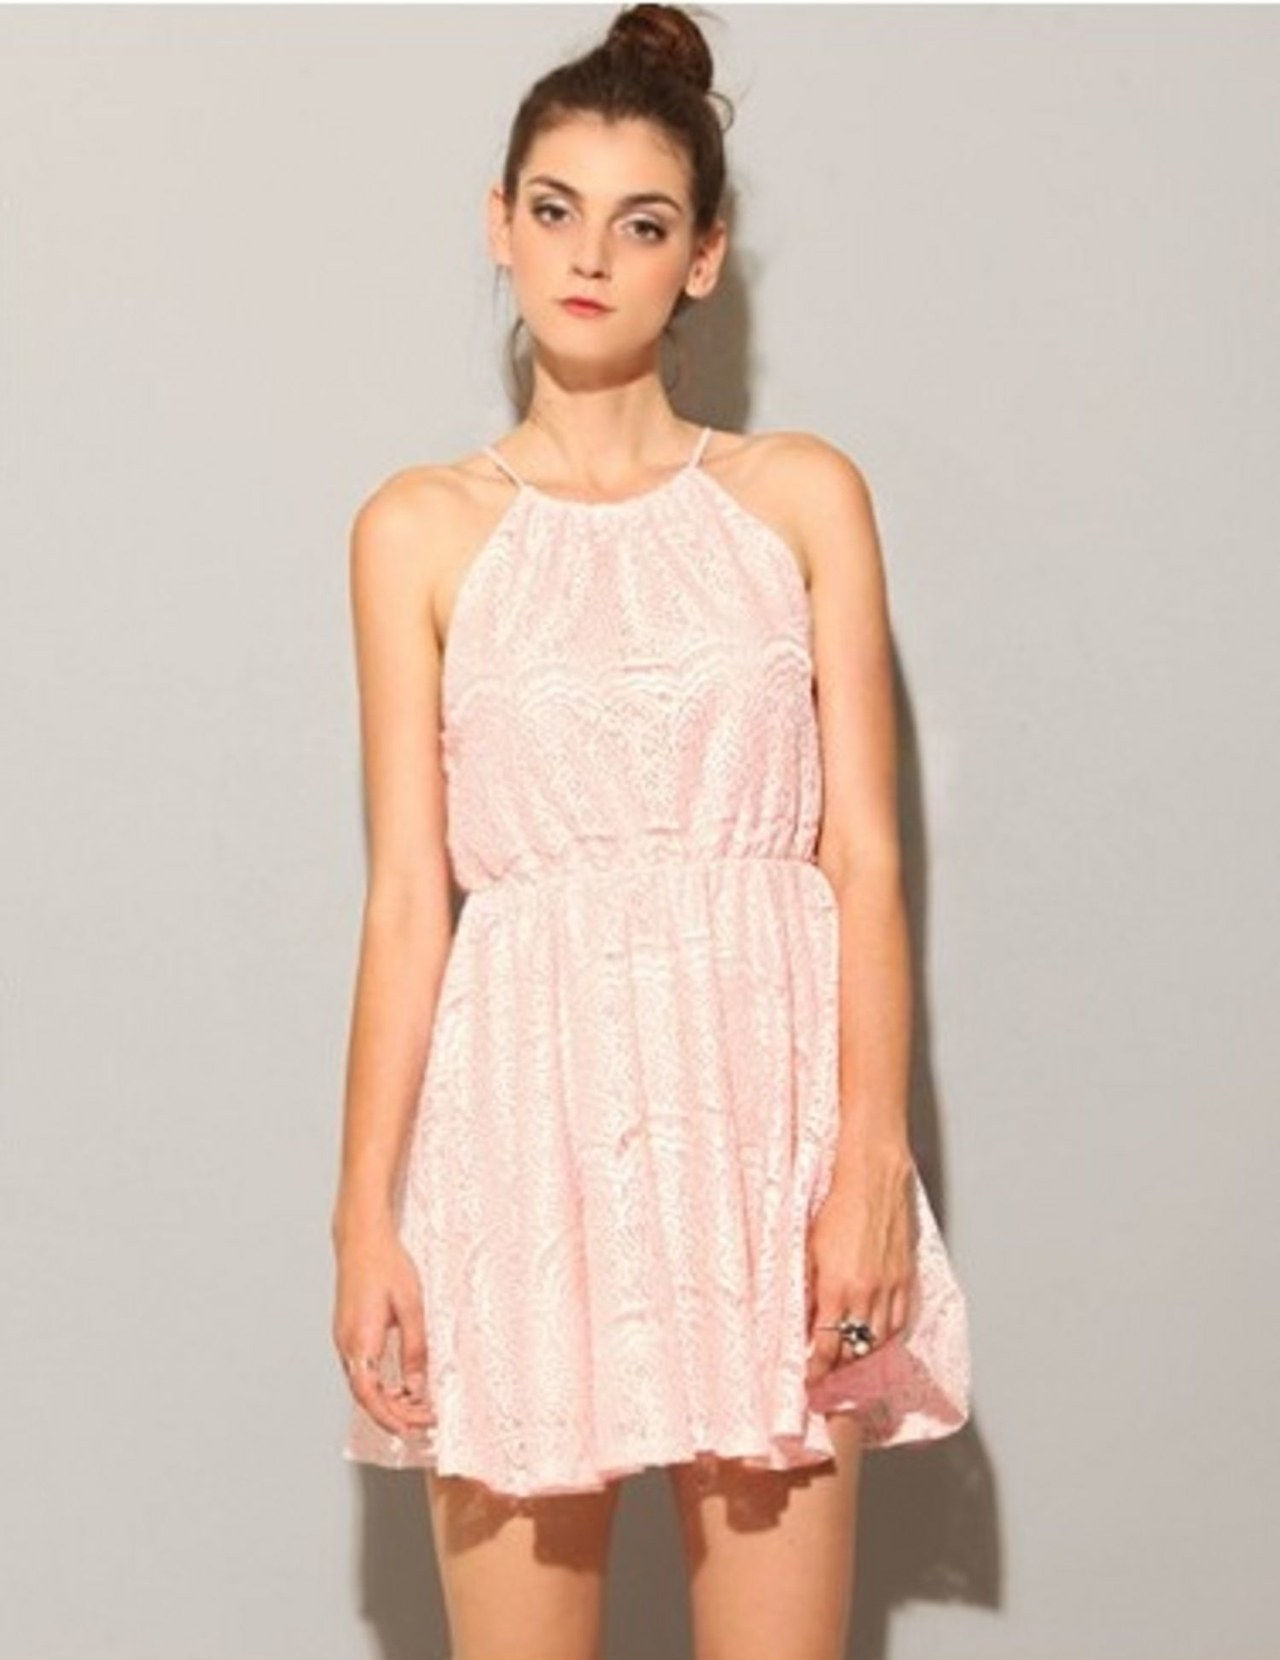 Pastel dresses Pixiemarket pastel pink lace dress fa